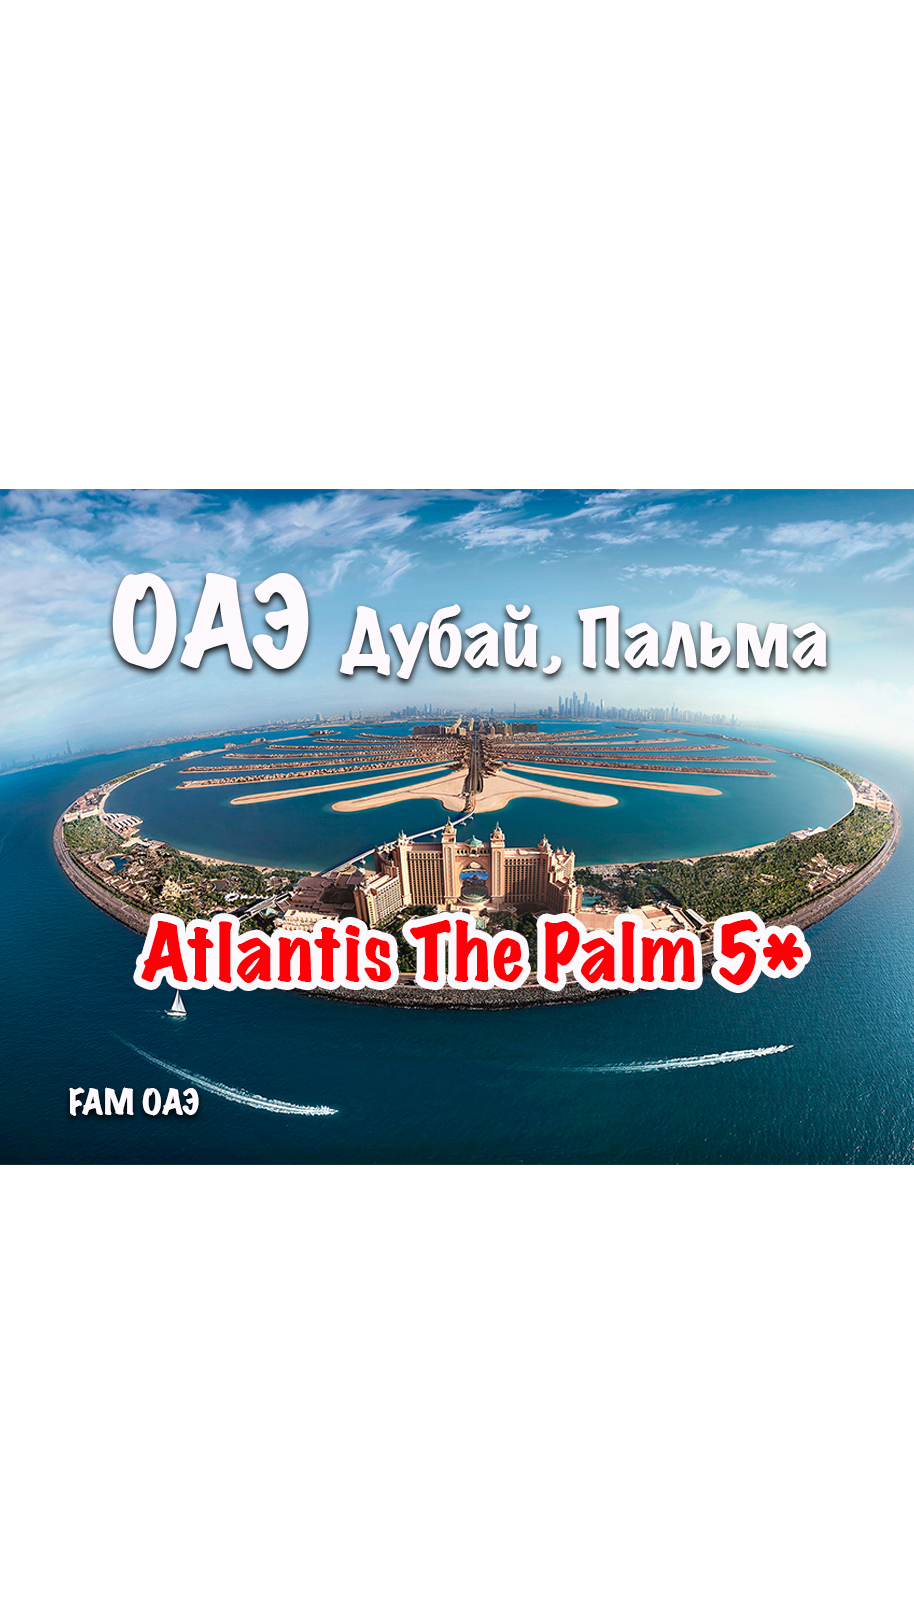 Atlantis The Palm (ОАЭ, Дубай, Пальма)